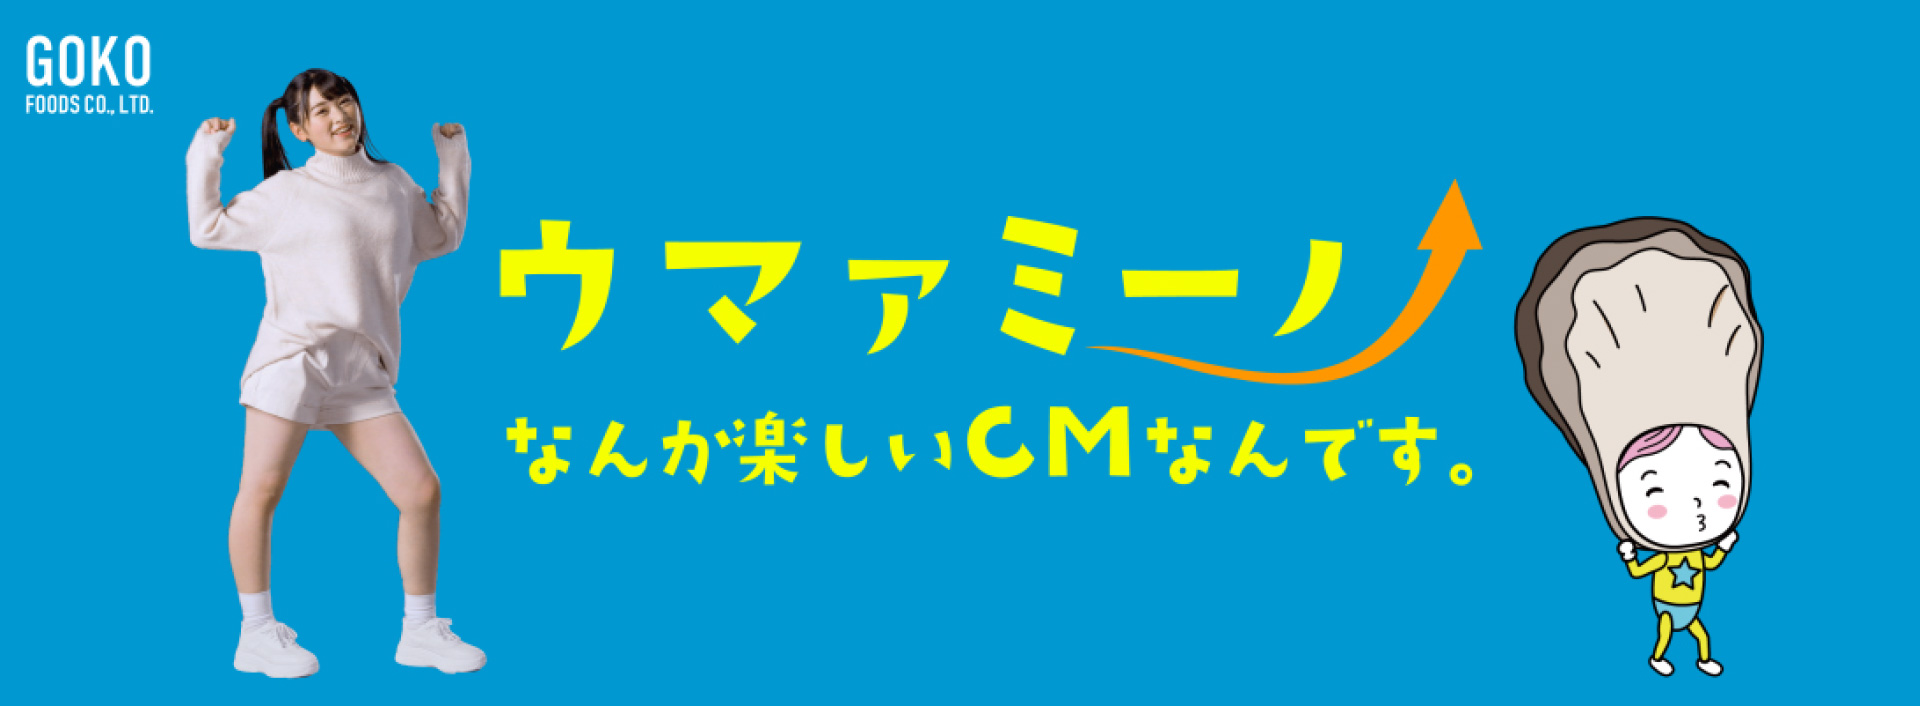 Goko Shokuhin Co., Ltd. Umami-no